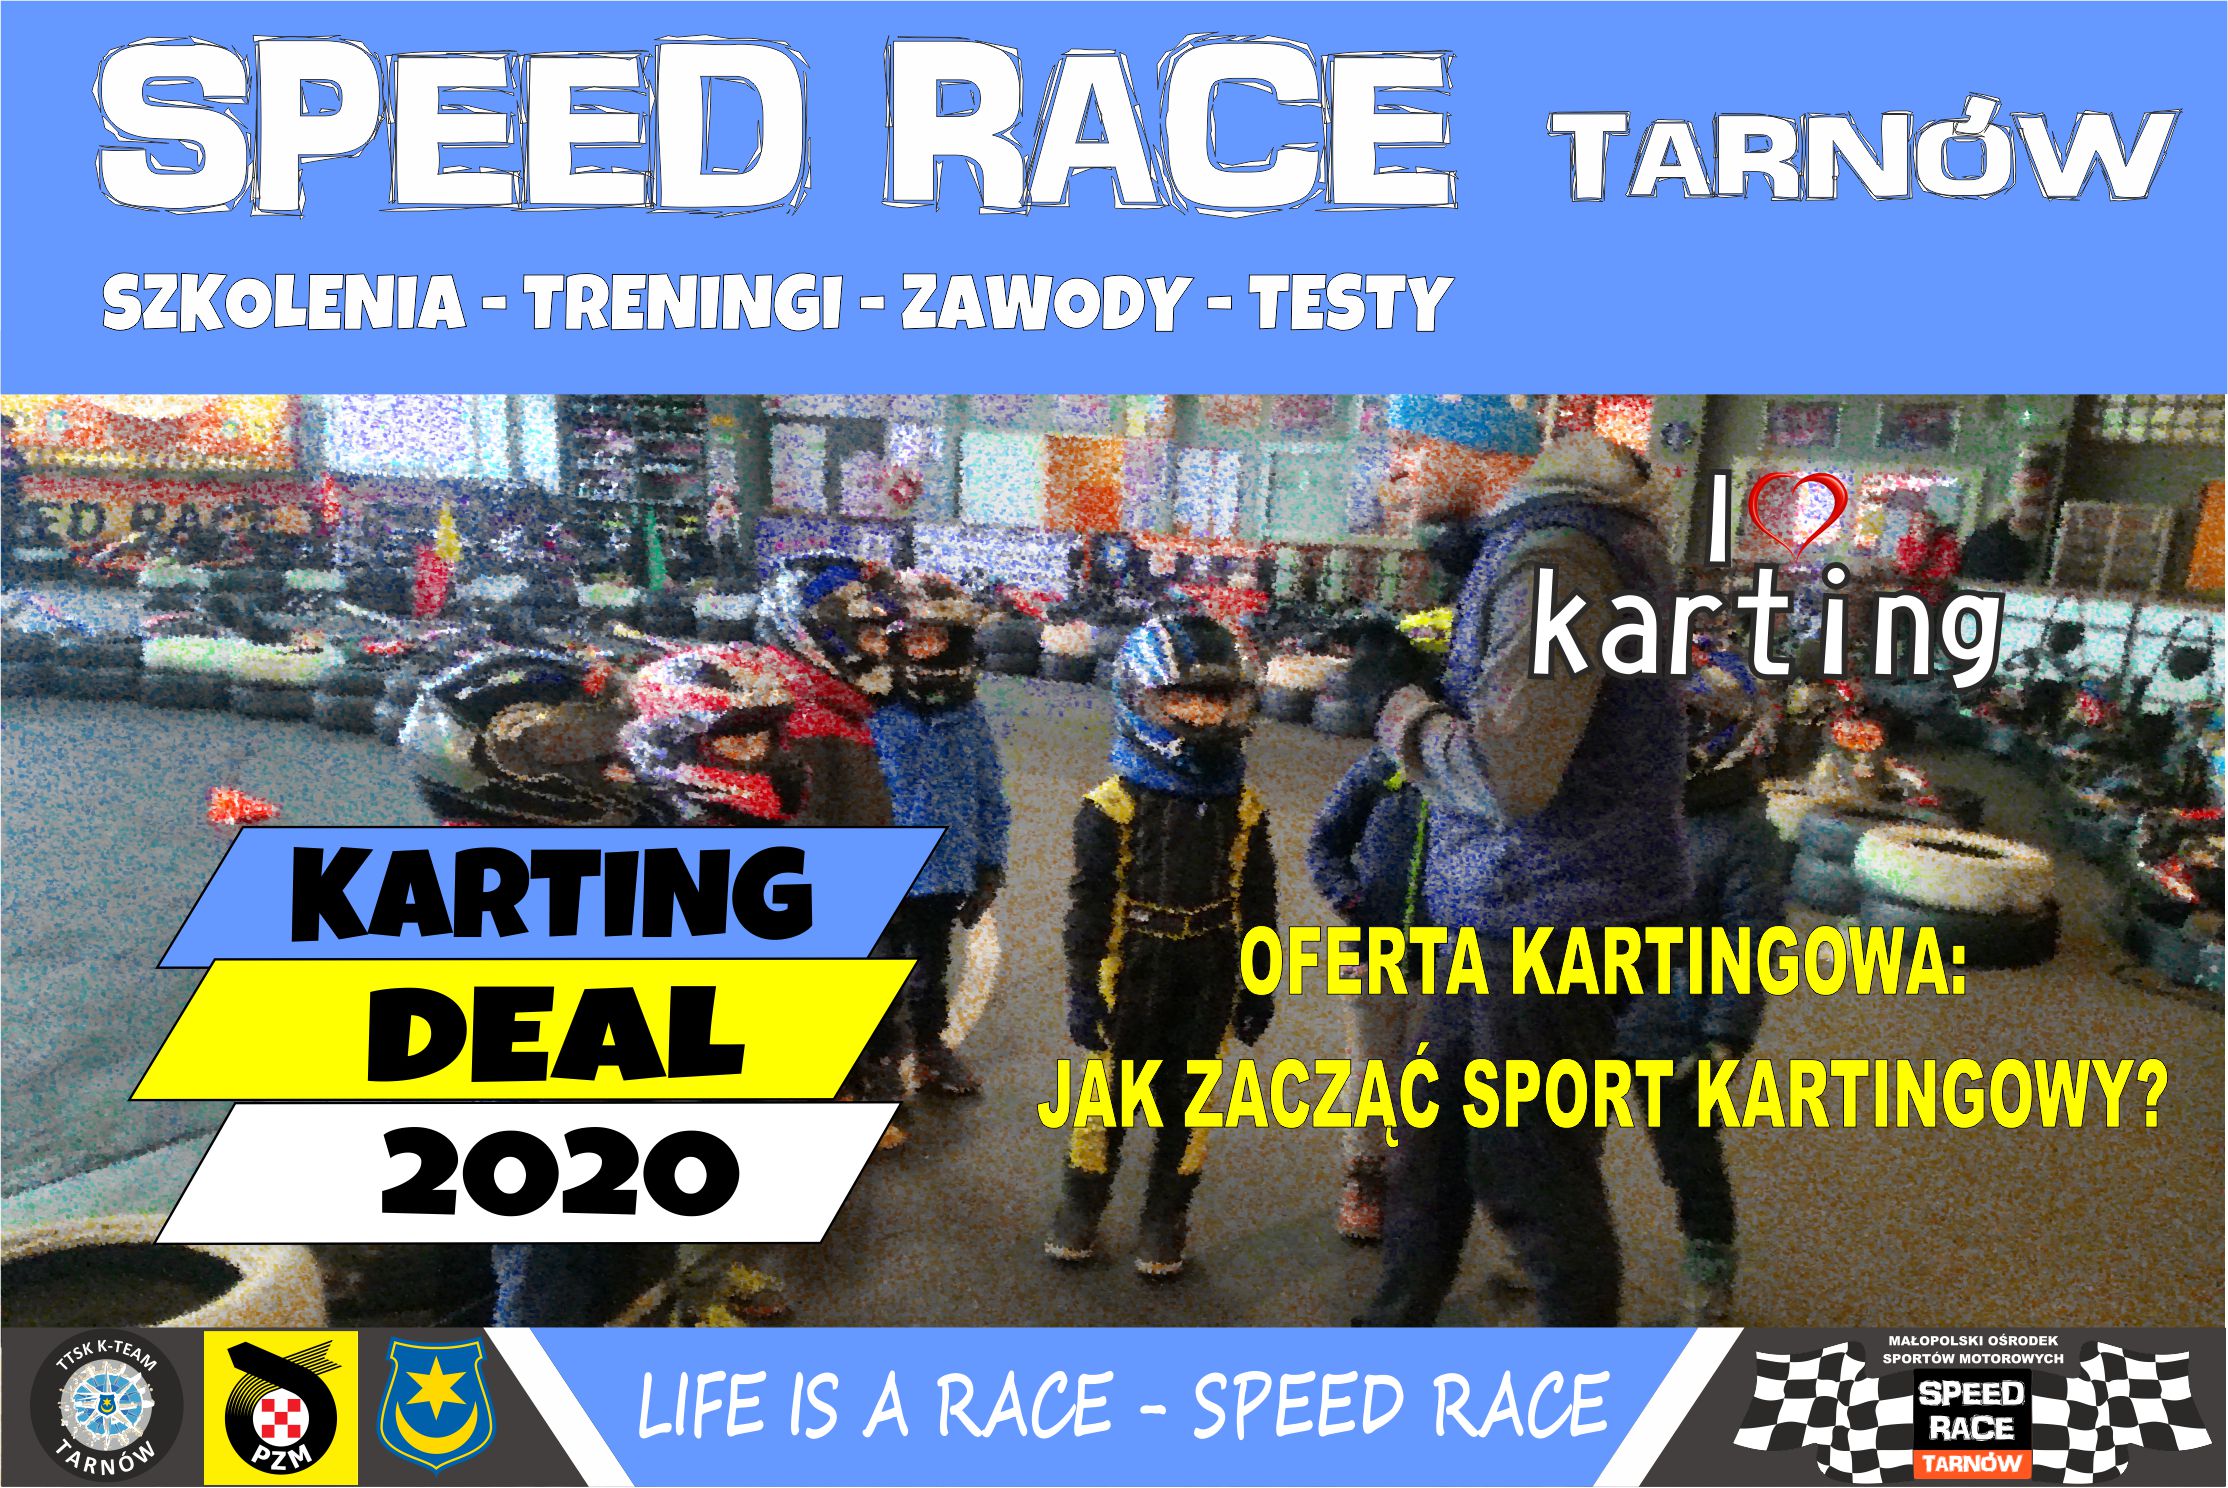 Karting Deal 2020.jpg